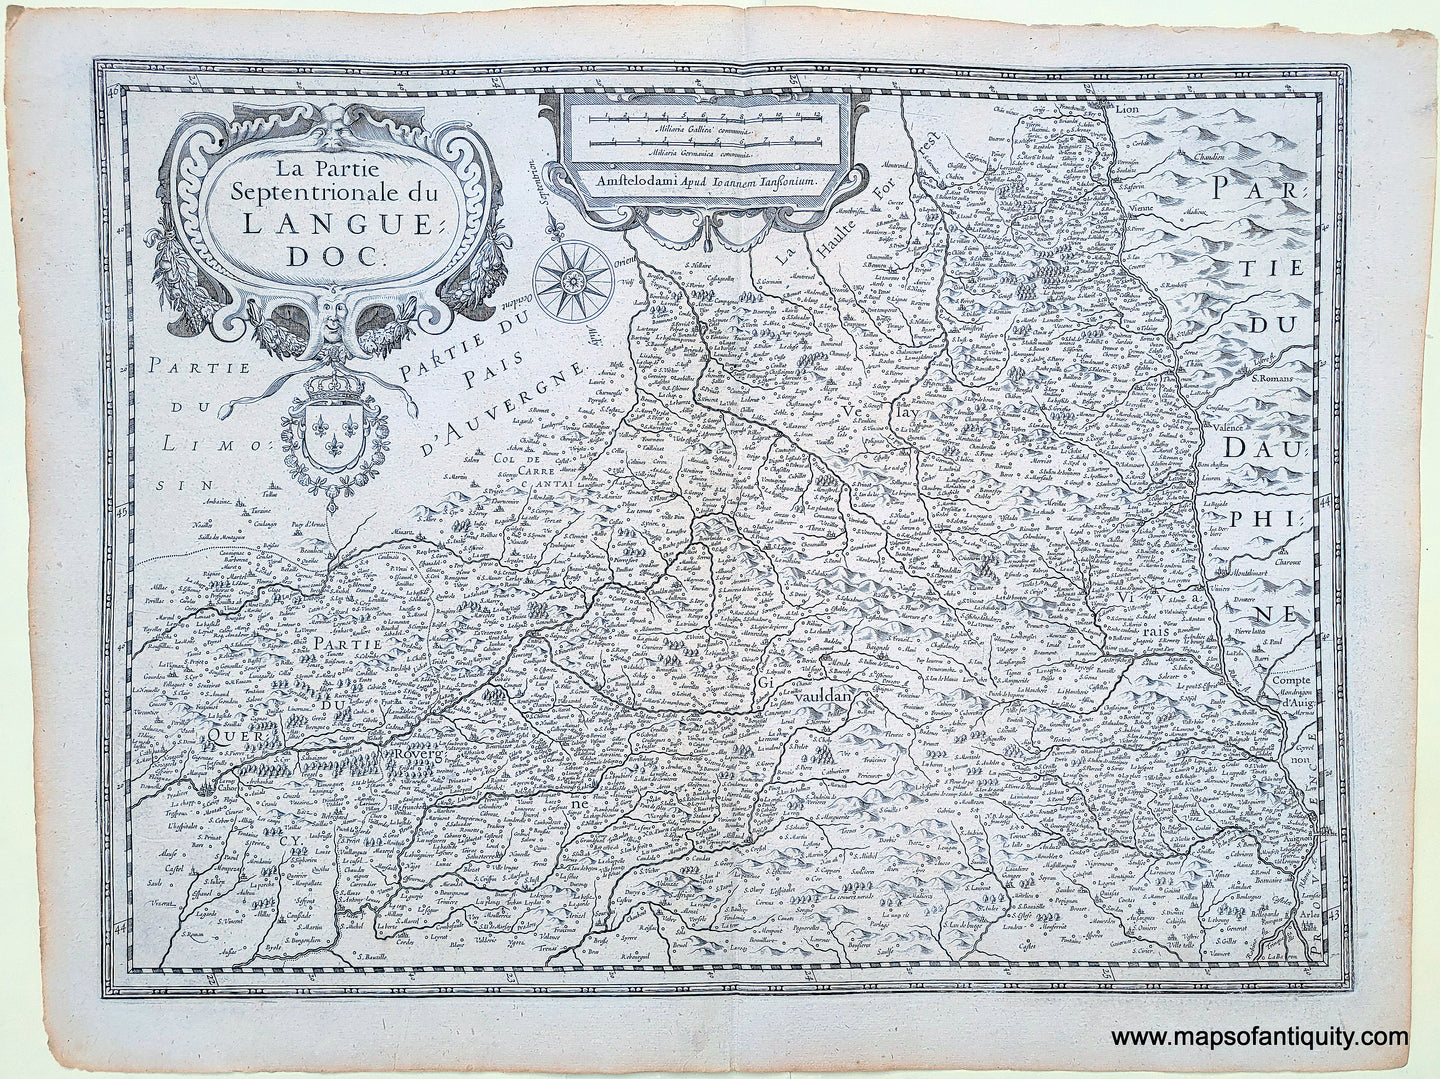 Antique-Map-La-Partie-Septentrionale-du-Languedoc-France-c.-1640-Jansson-Maps-of-Antiquity